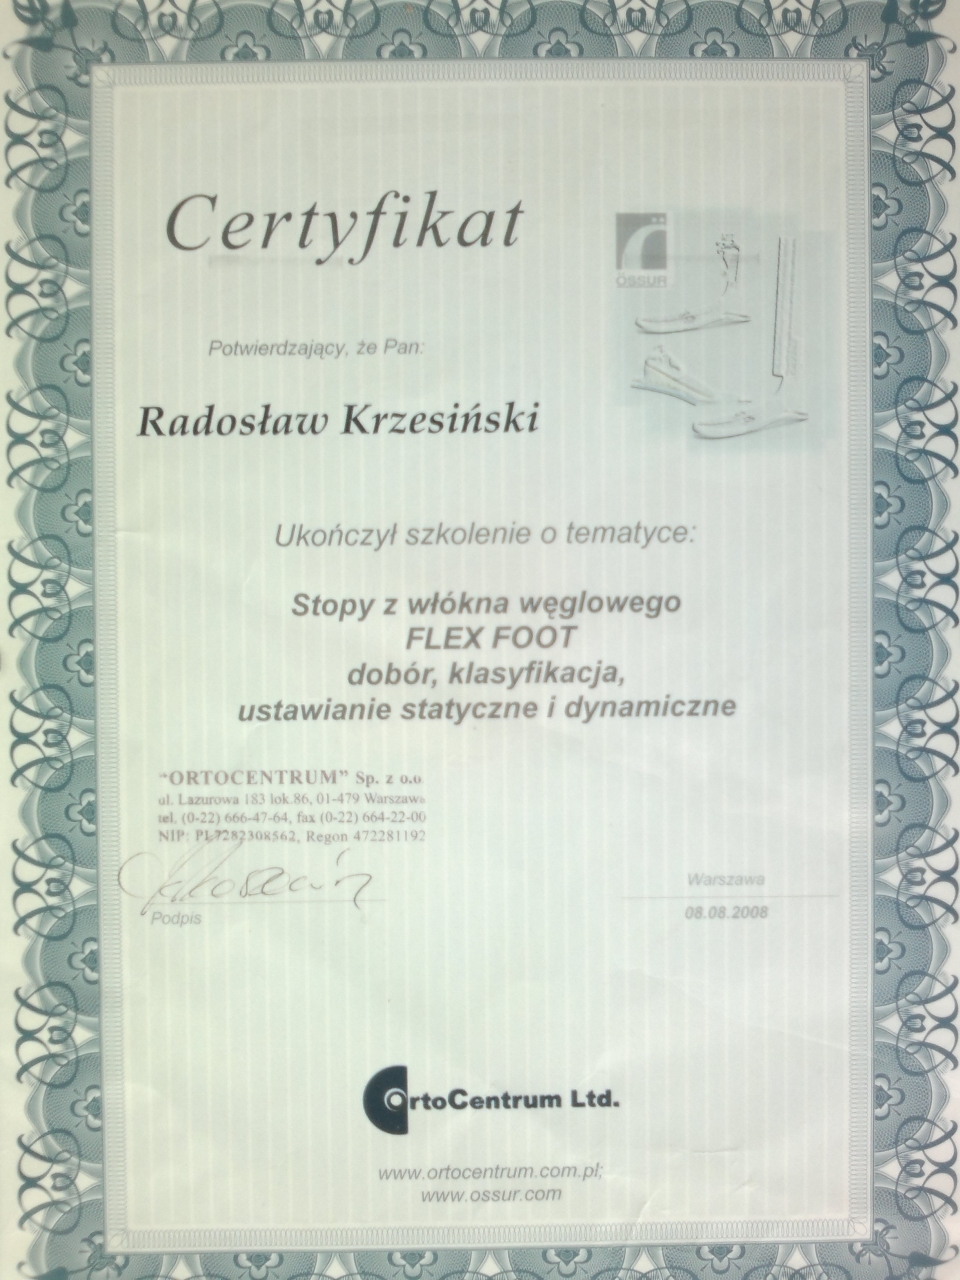 Certyfikat OrtoCentrum dla Radosława Krzesińskiego